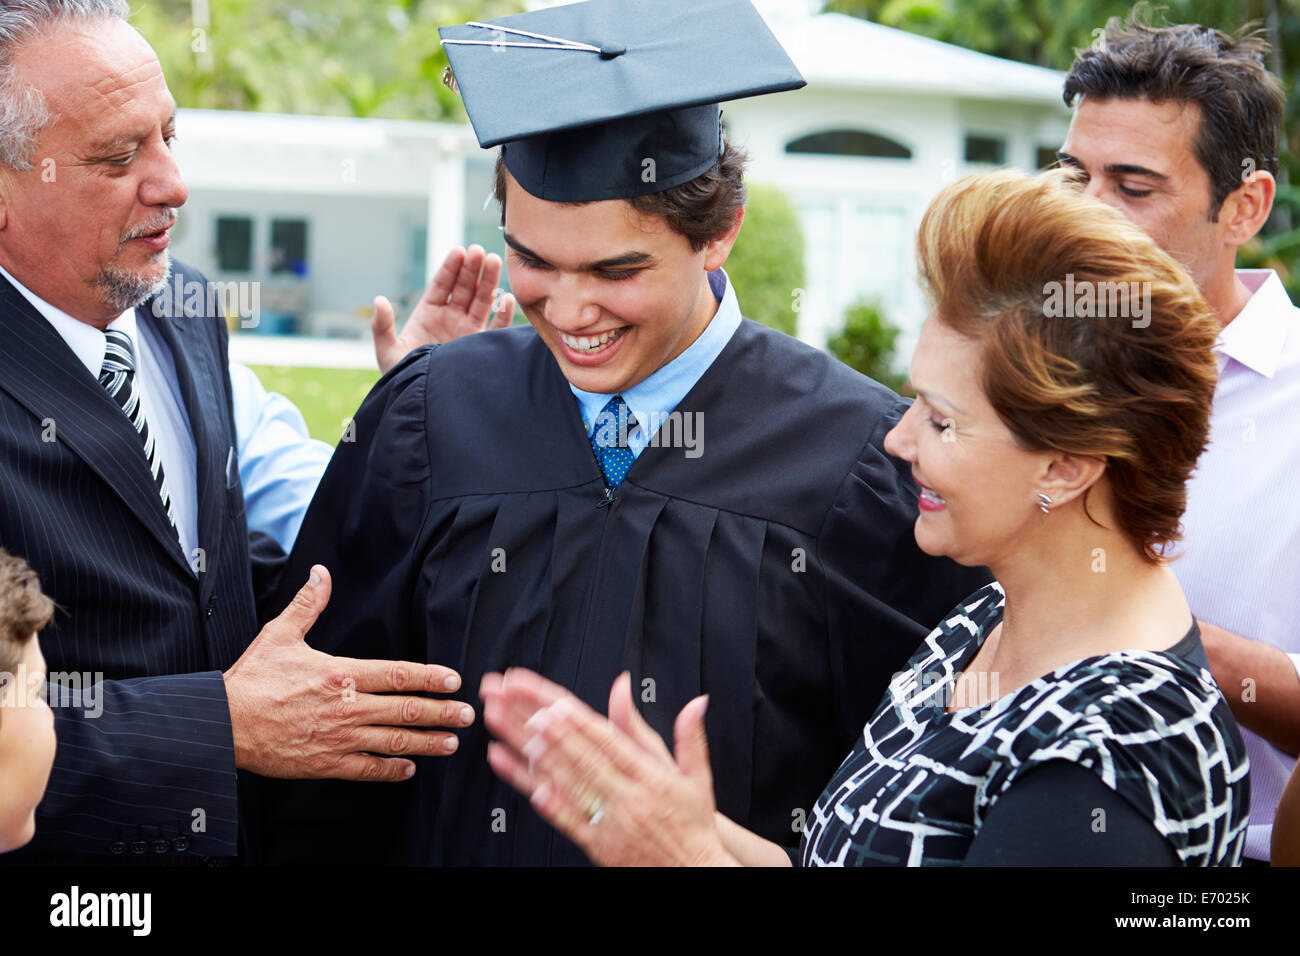 L'élève et de la famille hispanique célébrant l'obtention du diplôme Banque D'Images